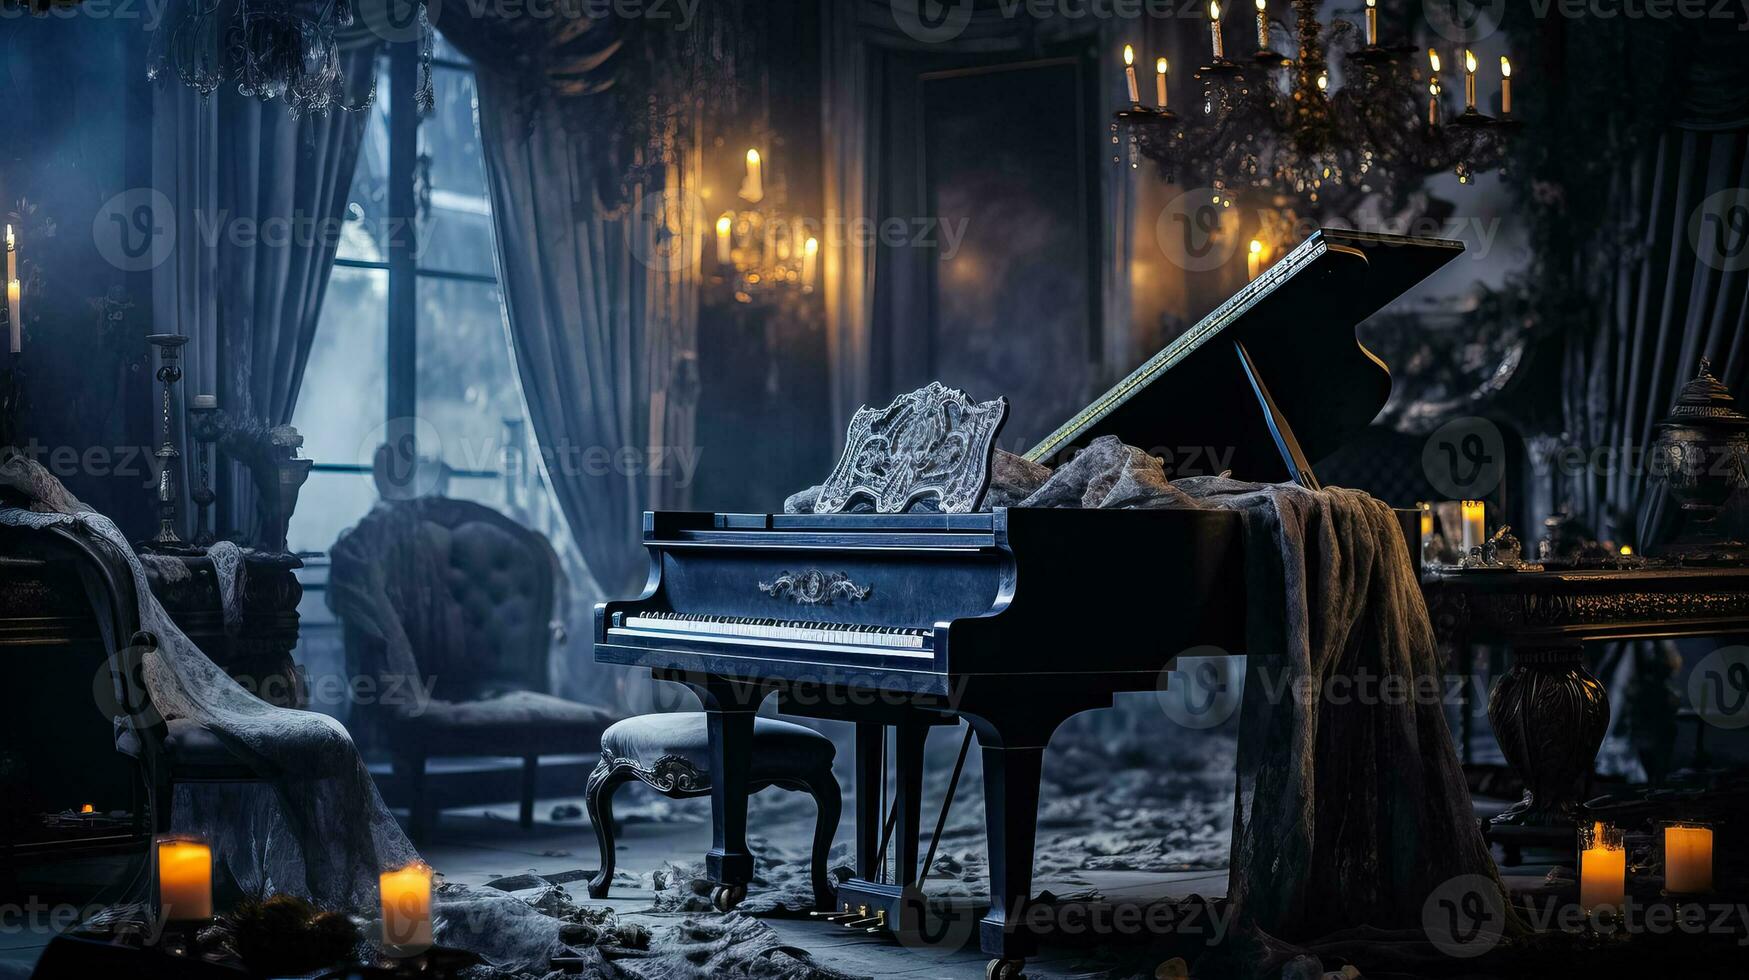 uma assustador vivo quarto transformado para dentro uma assombrada mansio tremeluzente velas teias de aranha e uma espectral coberto piano foto